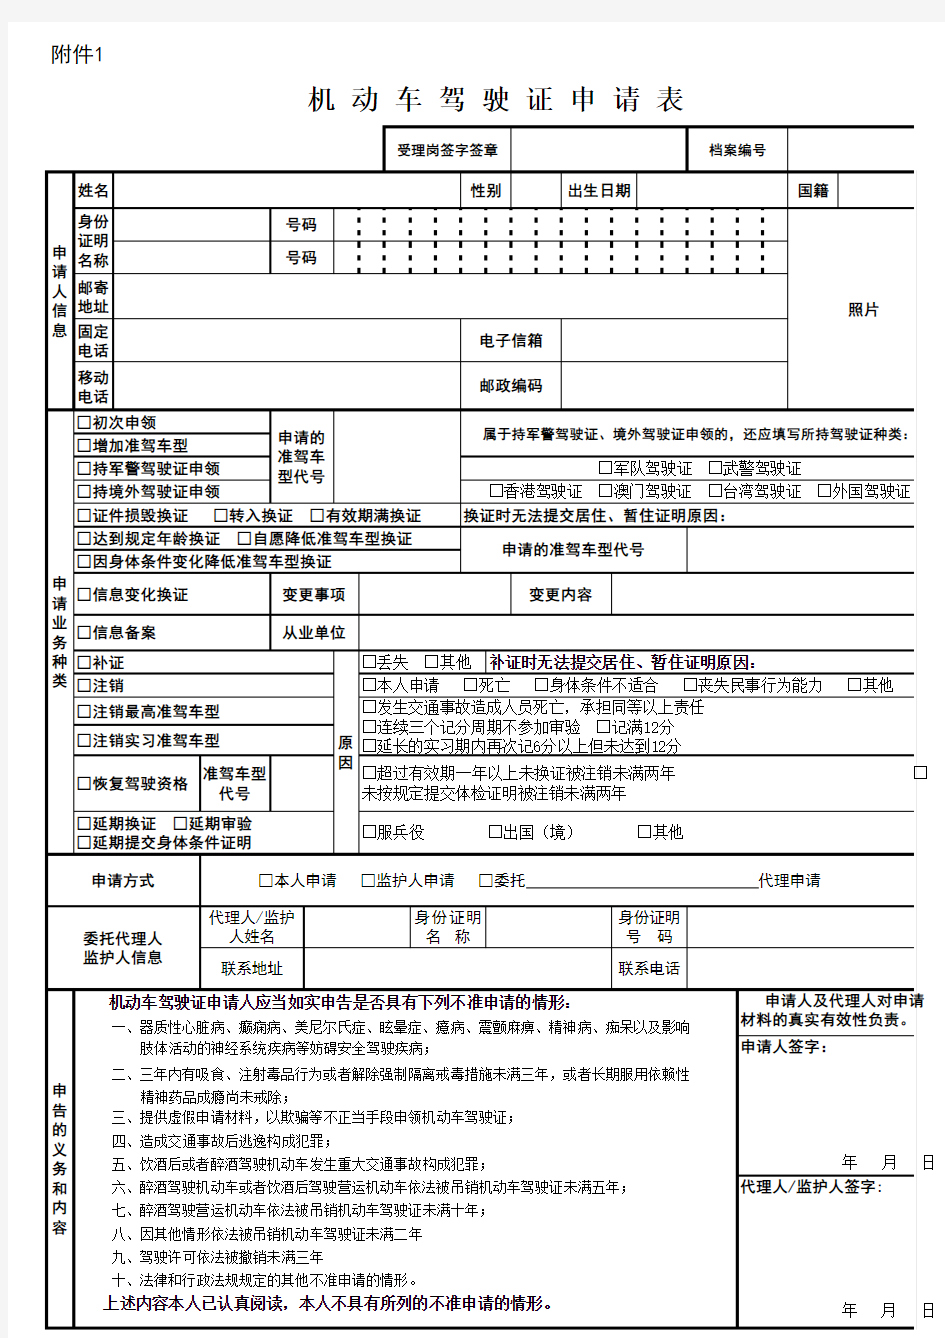 北京市公安局公安交通管理局《机动车驾驶证申请表》